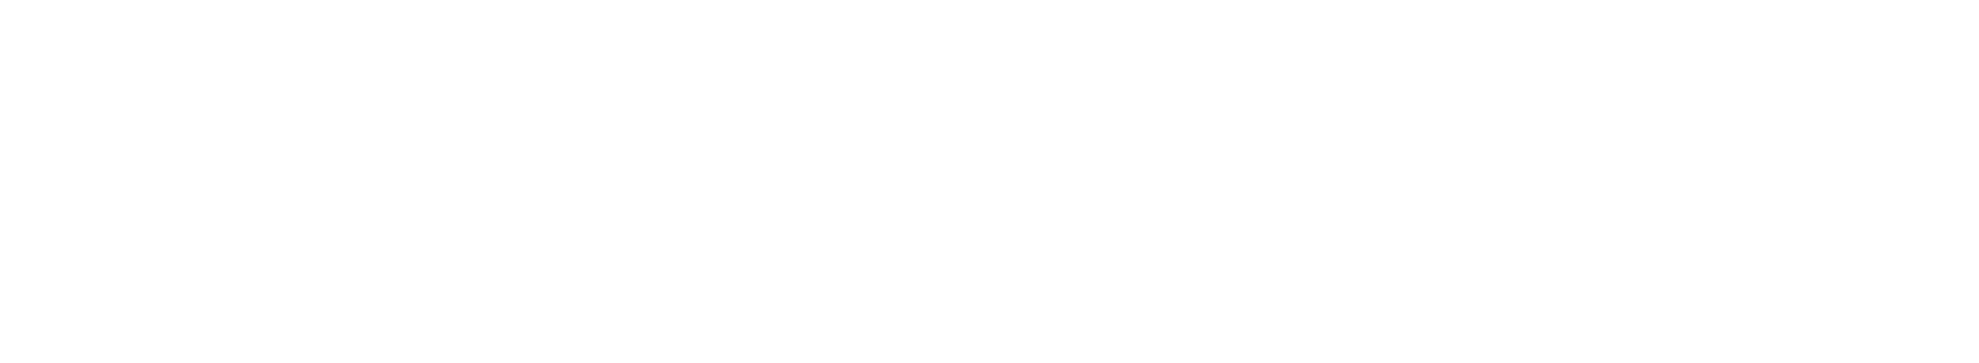 Why Study HCDD?